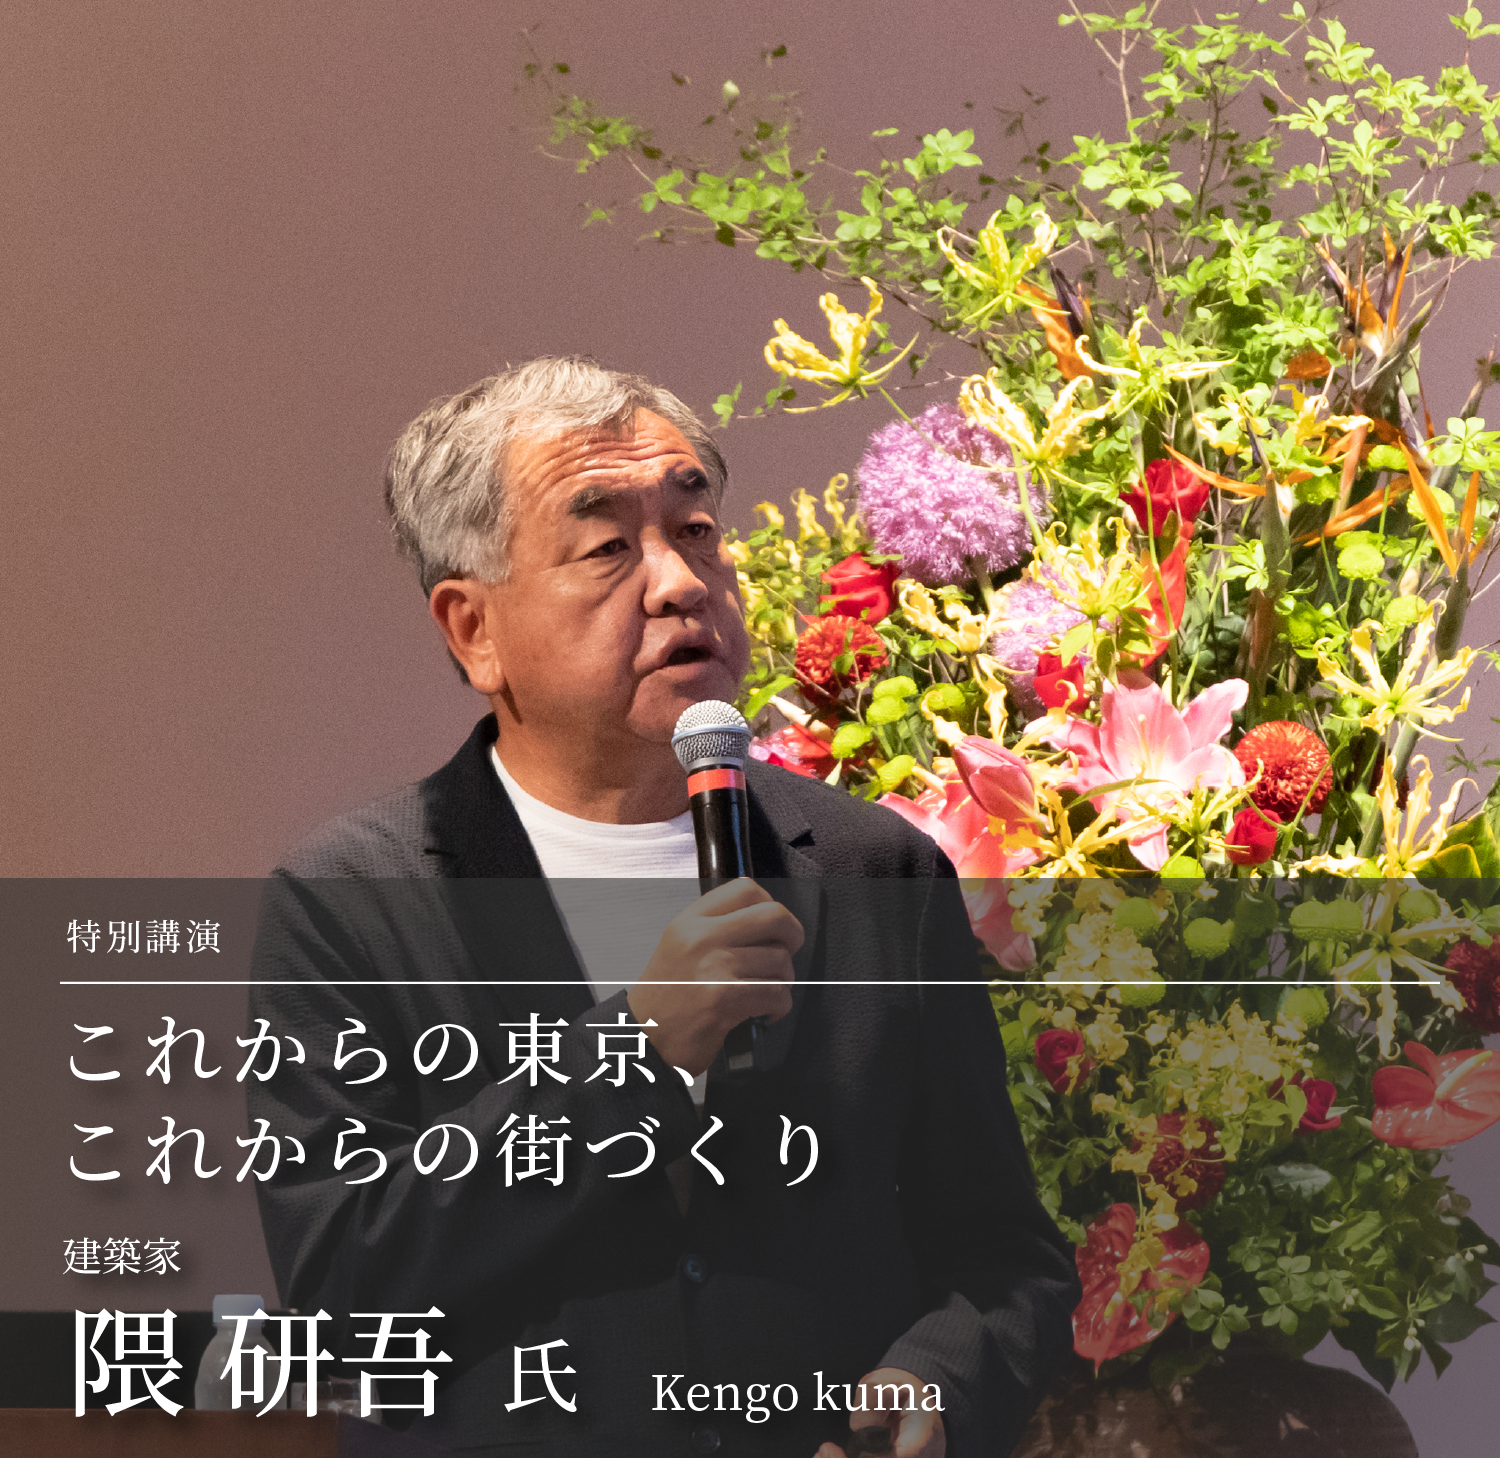 特別講演「これからの東京、これからの街づくり」建築家　隈研吾氏